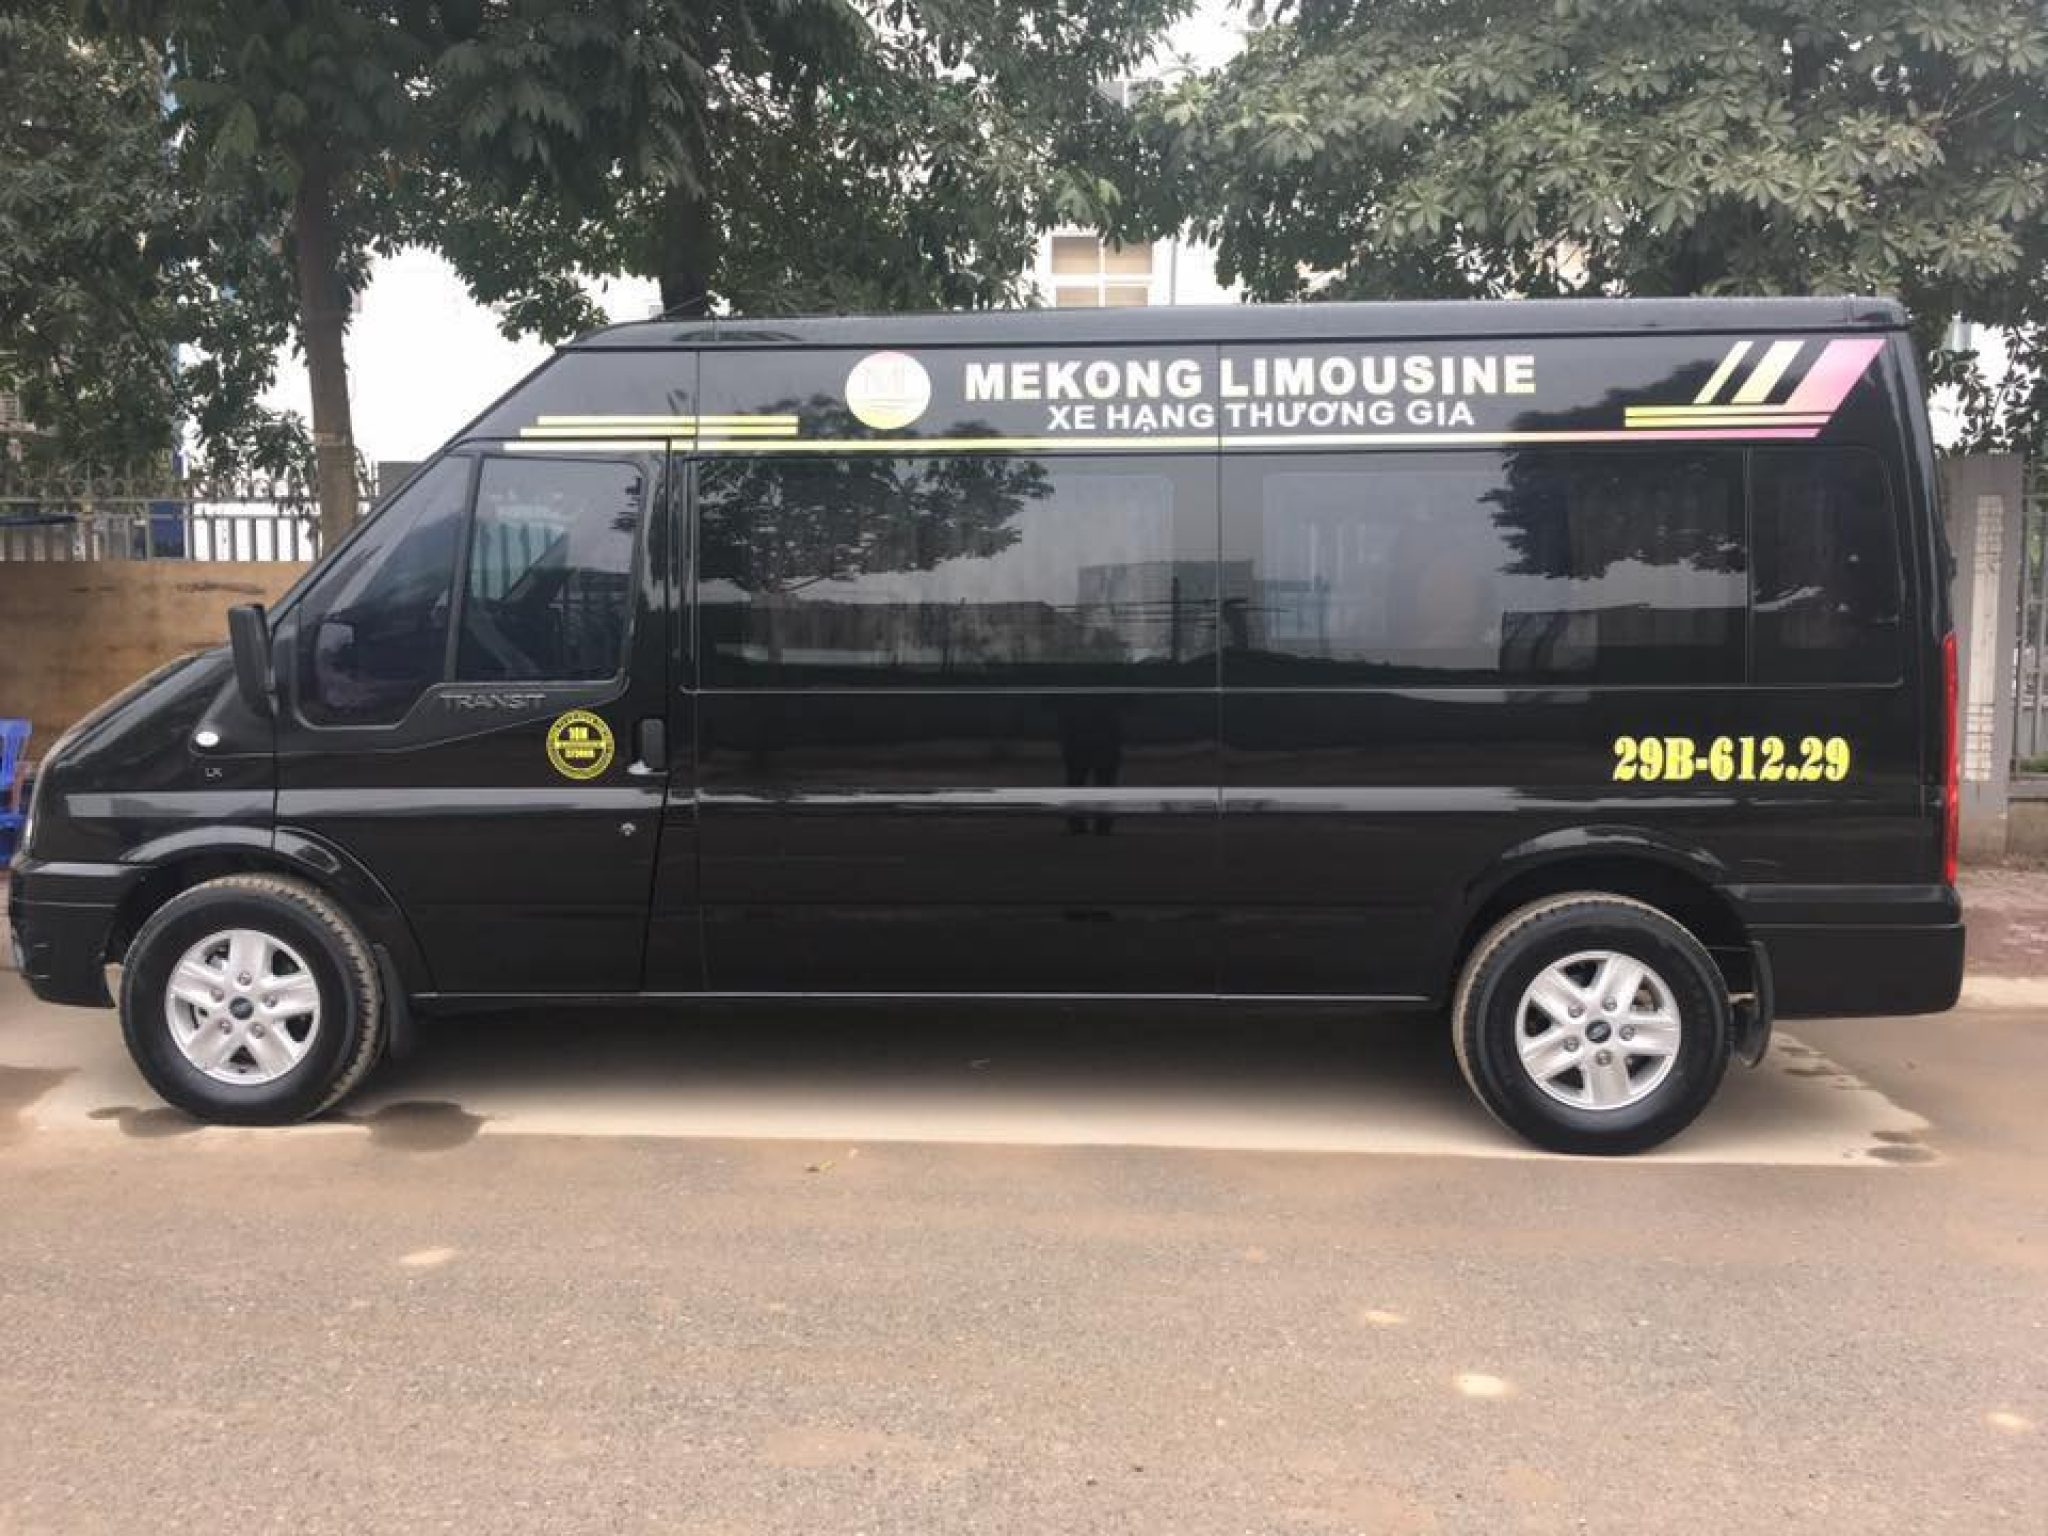 [Review] Đánh giá chất lượng nhà xe Mekong Limousine mới nhất - Megabus ...